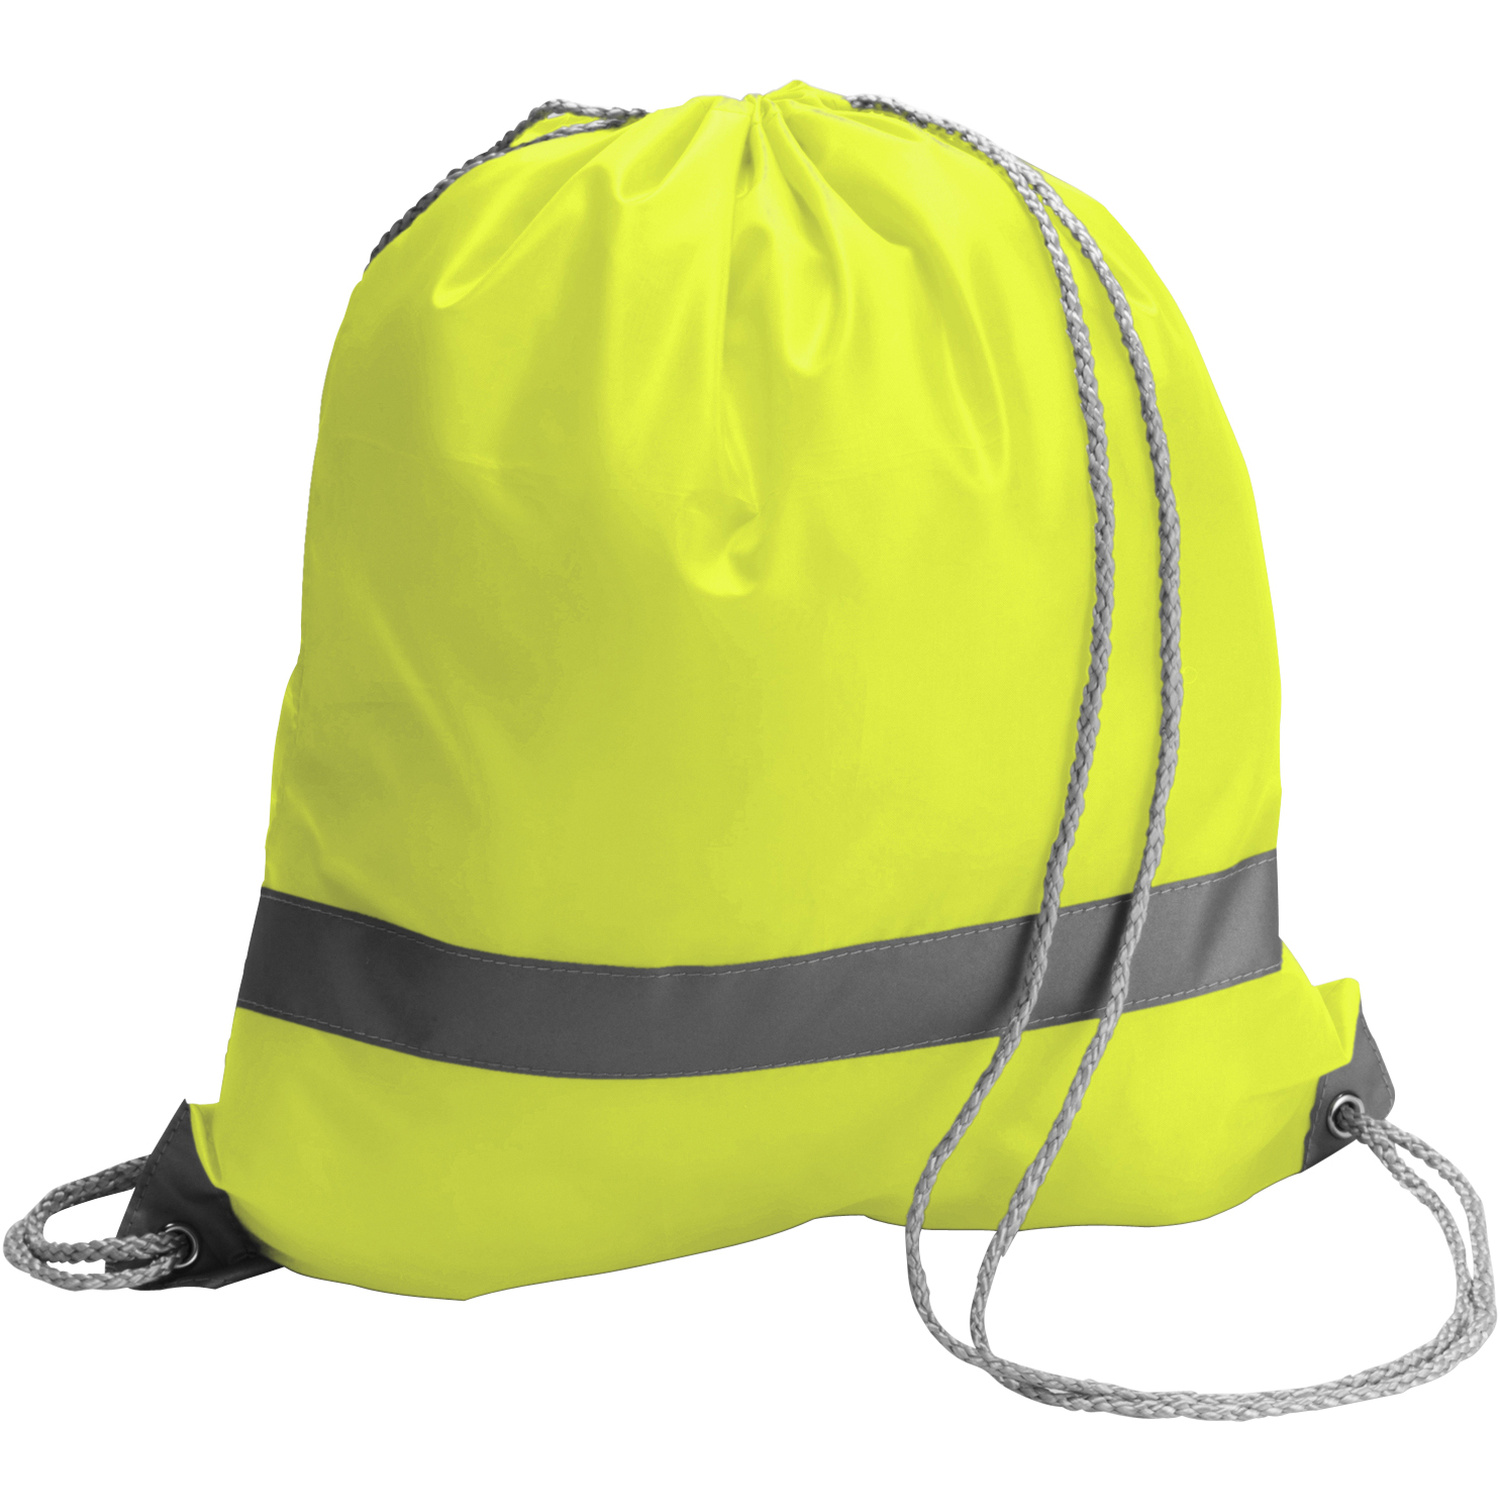 006238 006999999 3d135 frt pro01 fal - Saftey Drawstring backpack